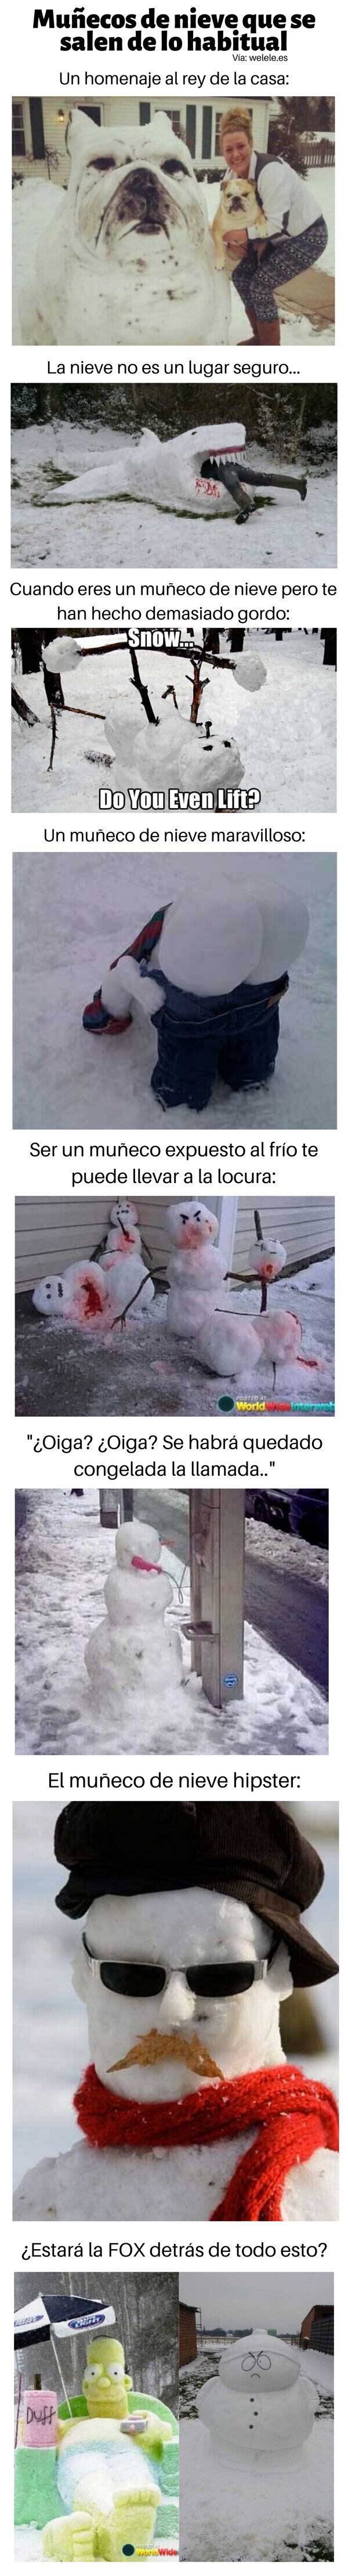 Meme_otros - Muñecos de nieve que se salen de lo habitual